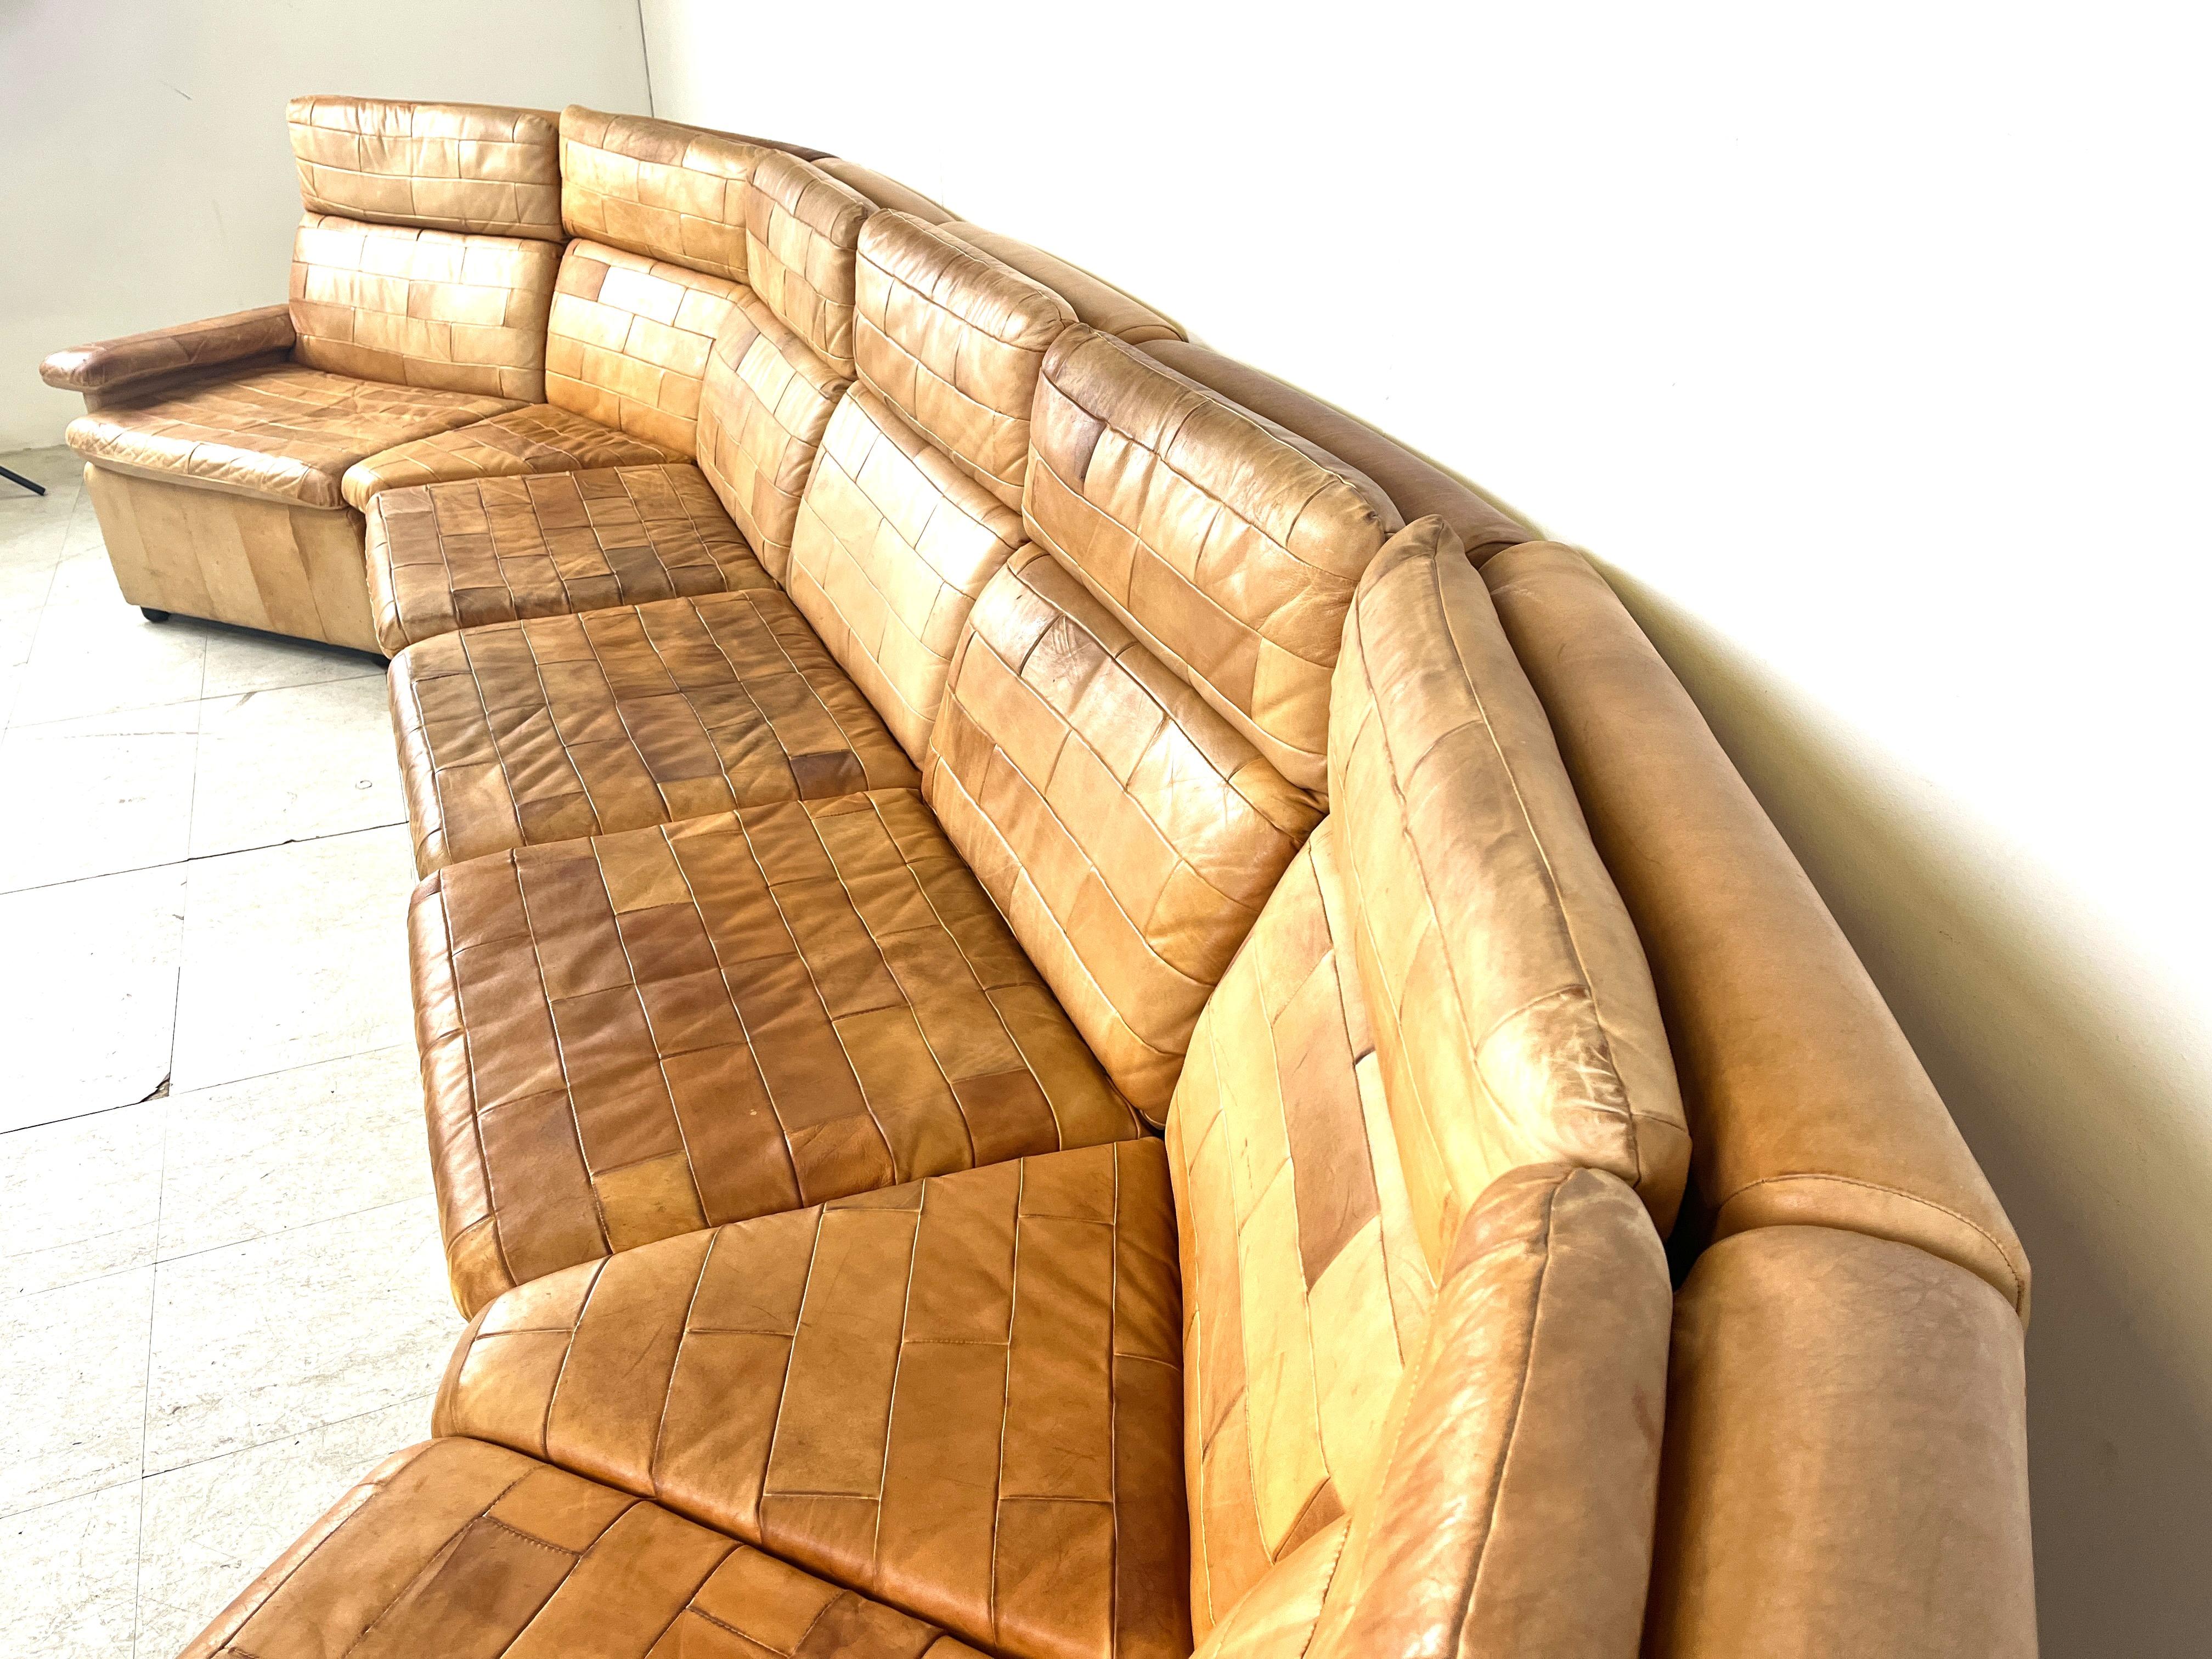 Sektionssofa/Modularsofa aus der Mitte des Jahrhunderts in kamelbraunem Patchwork-Leder.

Die Sofagarnitur ist komplett modular aufgebaut und besteht aus 7 Elementen.

Das ideale Stück, um ein freistehendes Sofa zu schaffen, das zum Mittelpunkt